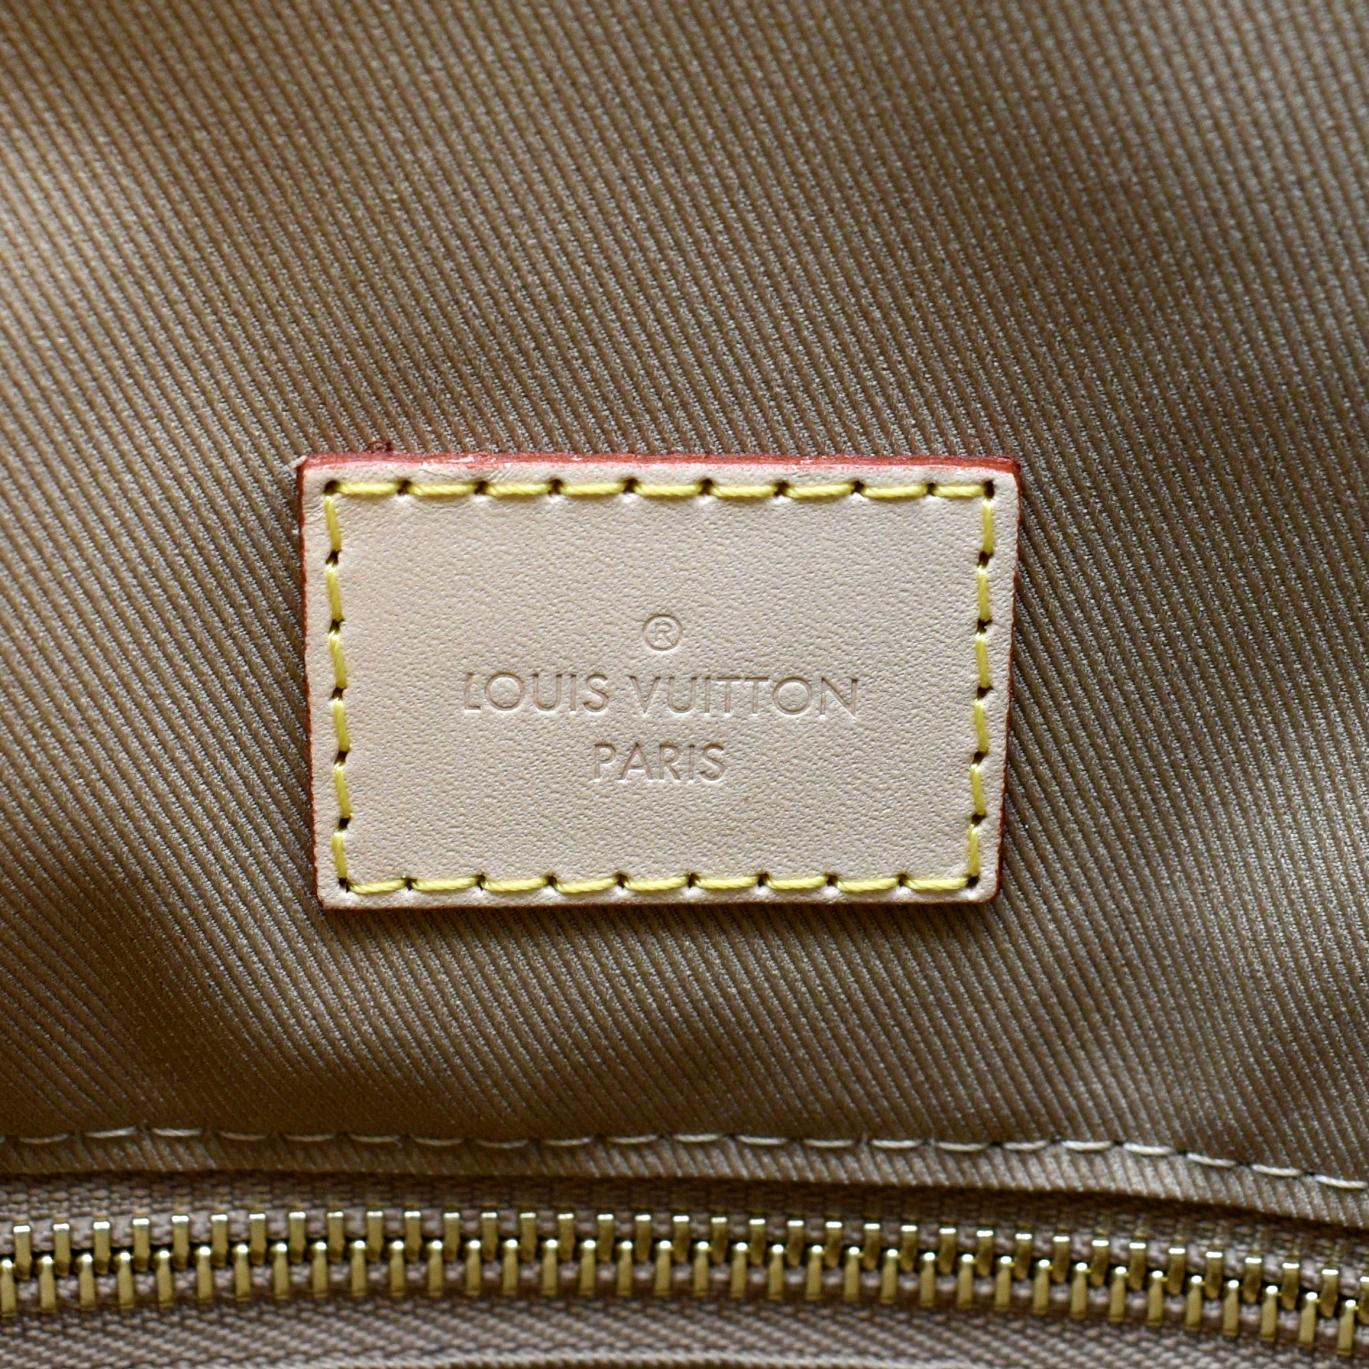 Louis Vuitton graceful mm monogram canvas – thankunext.us